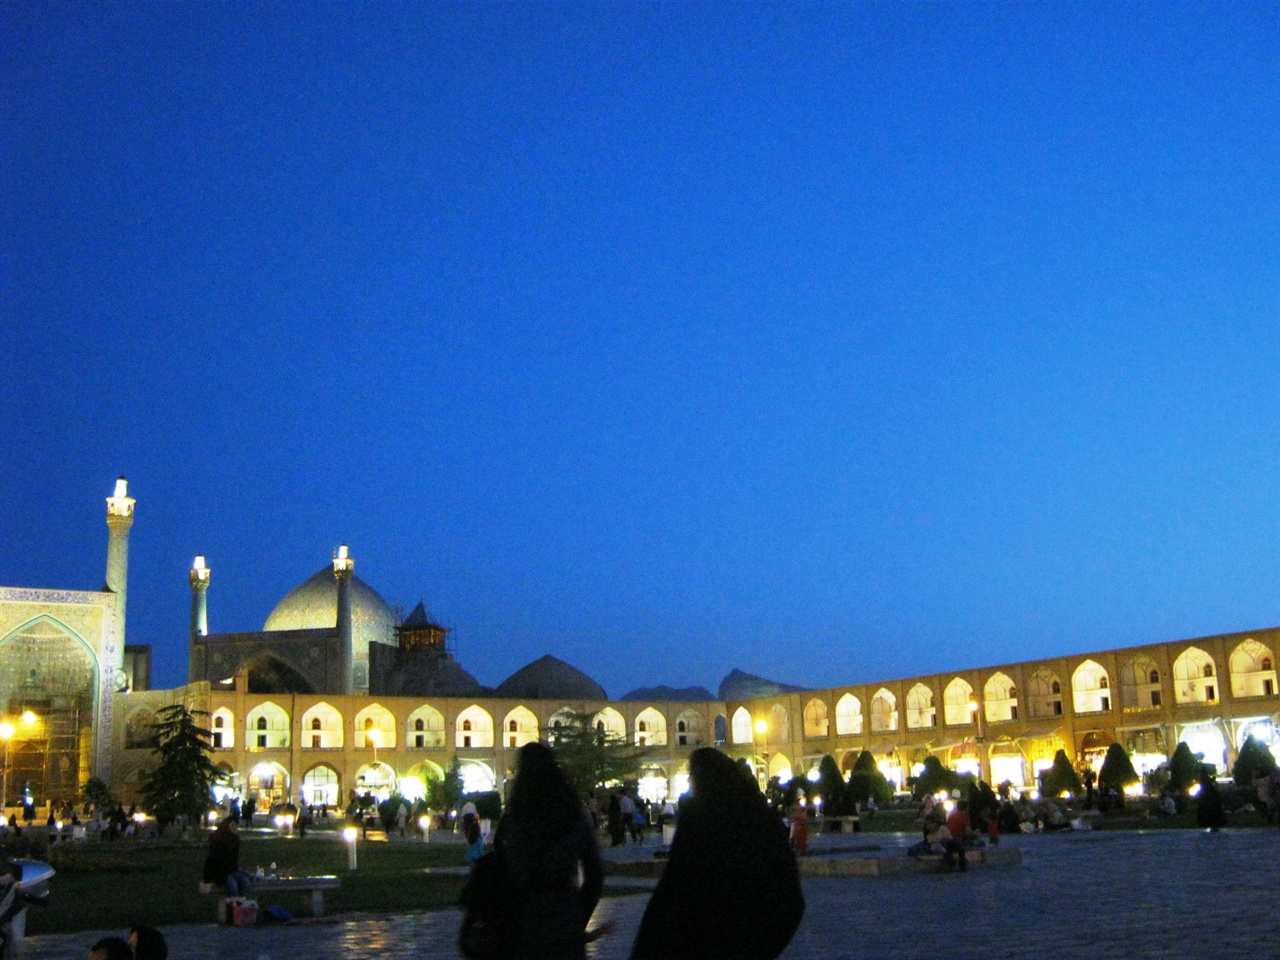 밤의 장막이 드리워진 이맘 광장.